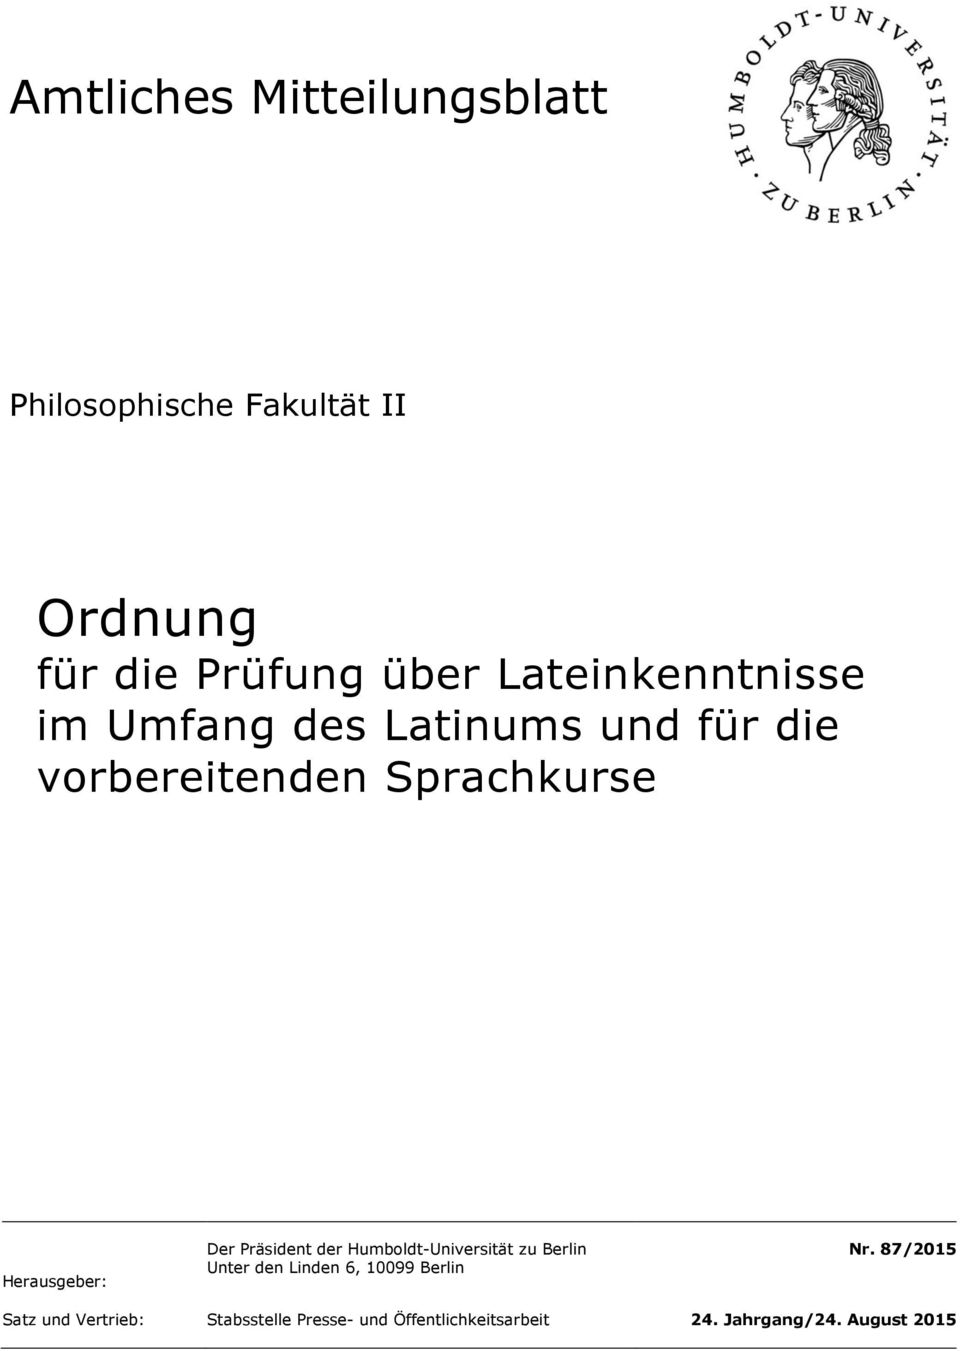 Herausgeber: Der Präsident der Humboldt-Universität zu Berlin Unter den Linden 6, 10099